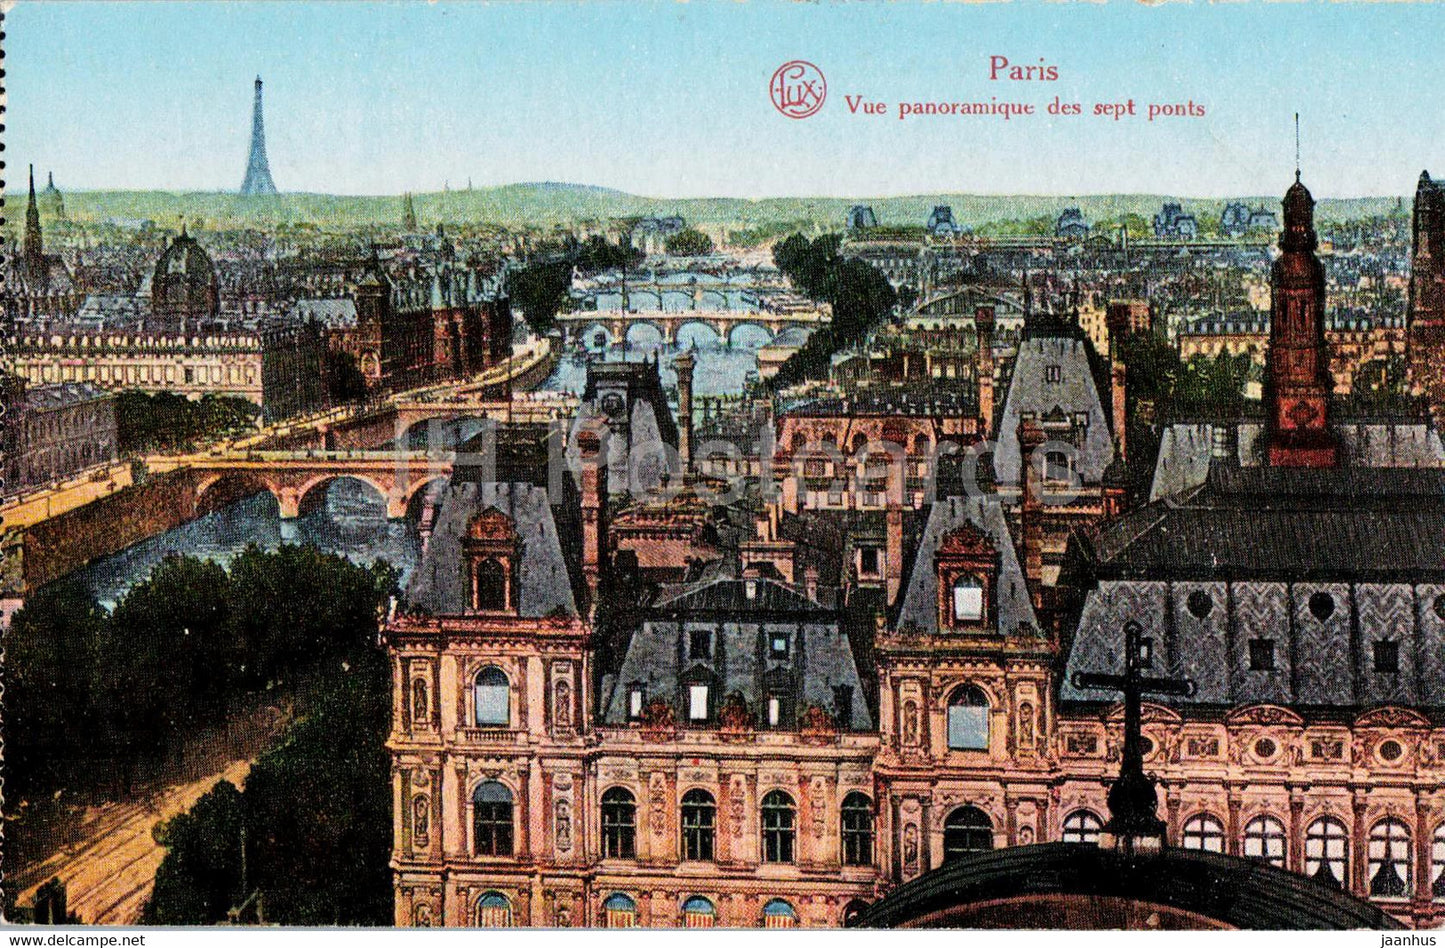 Paris - Vue panoramique des sept ponts - Ser 112 - old postcard - France - unused - JH Postcards